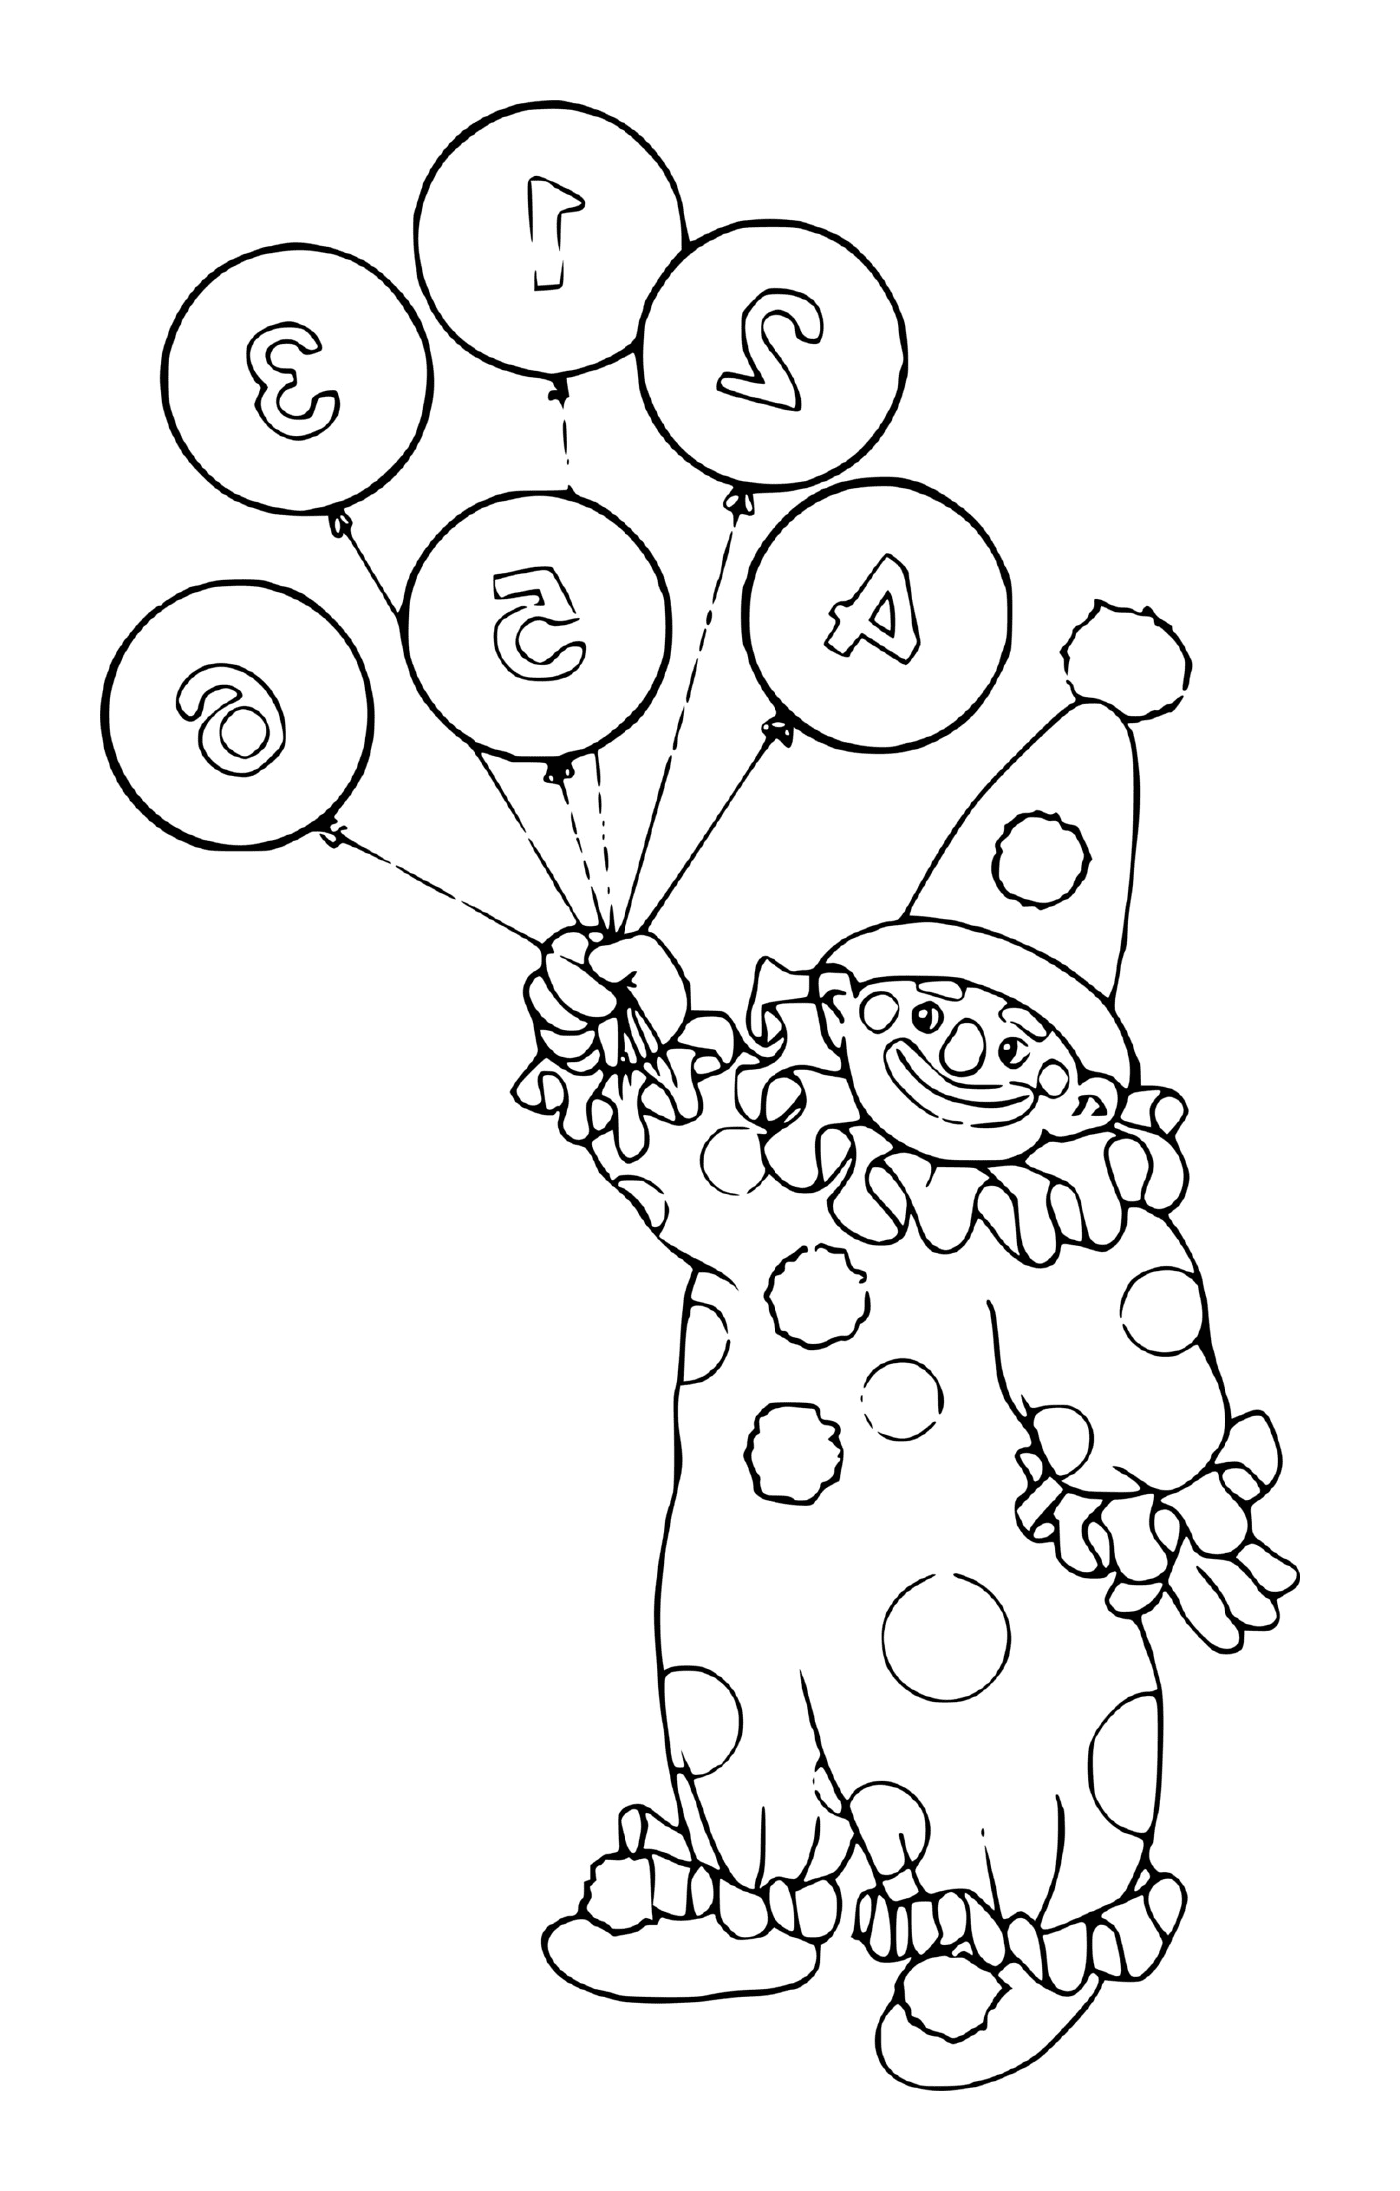  Palhaço segurando balões numerados 